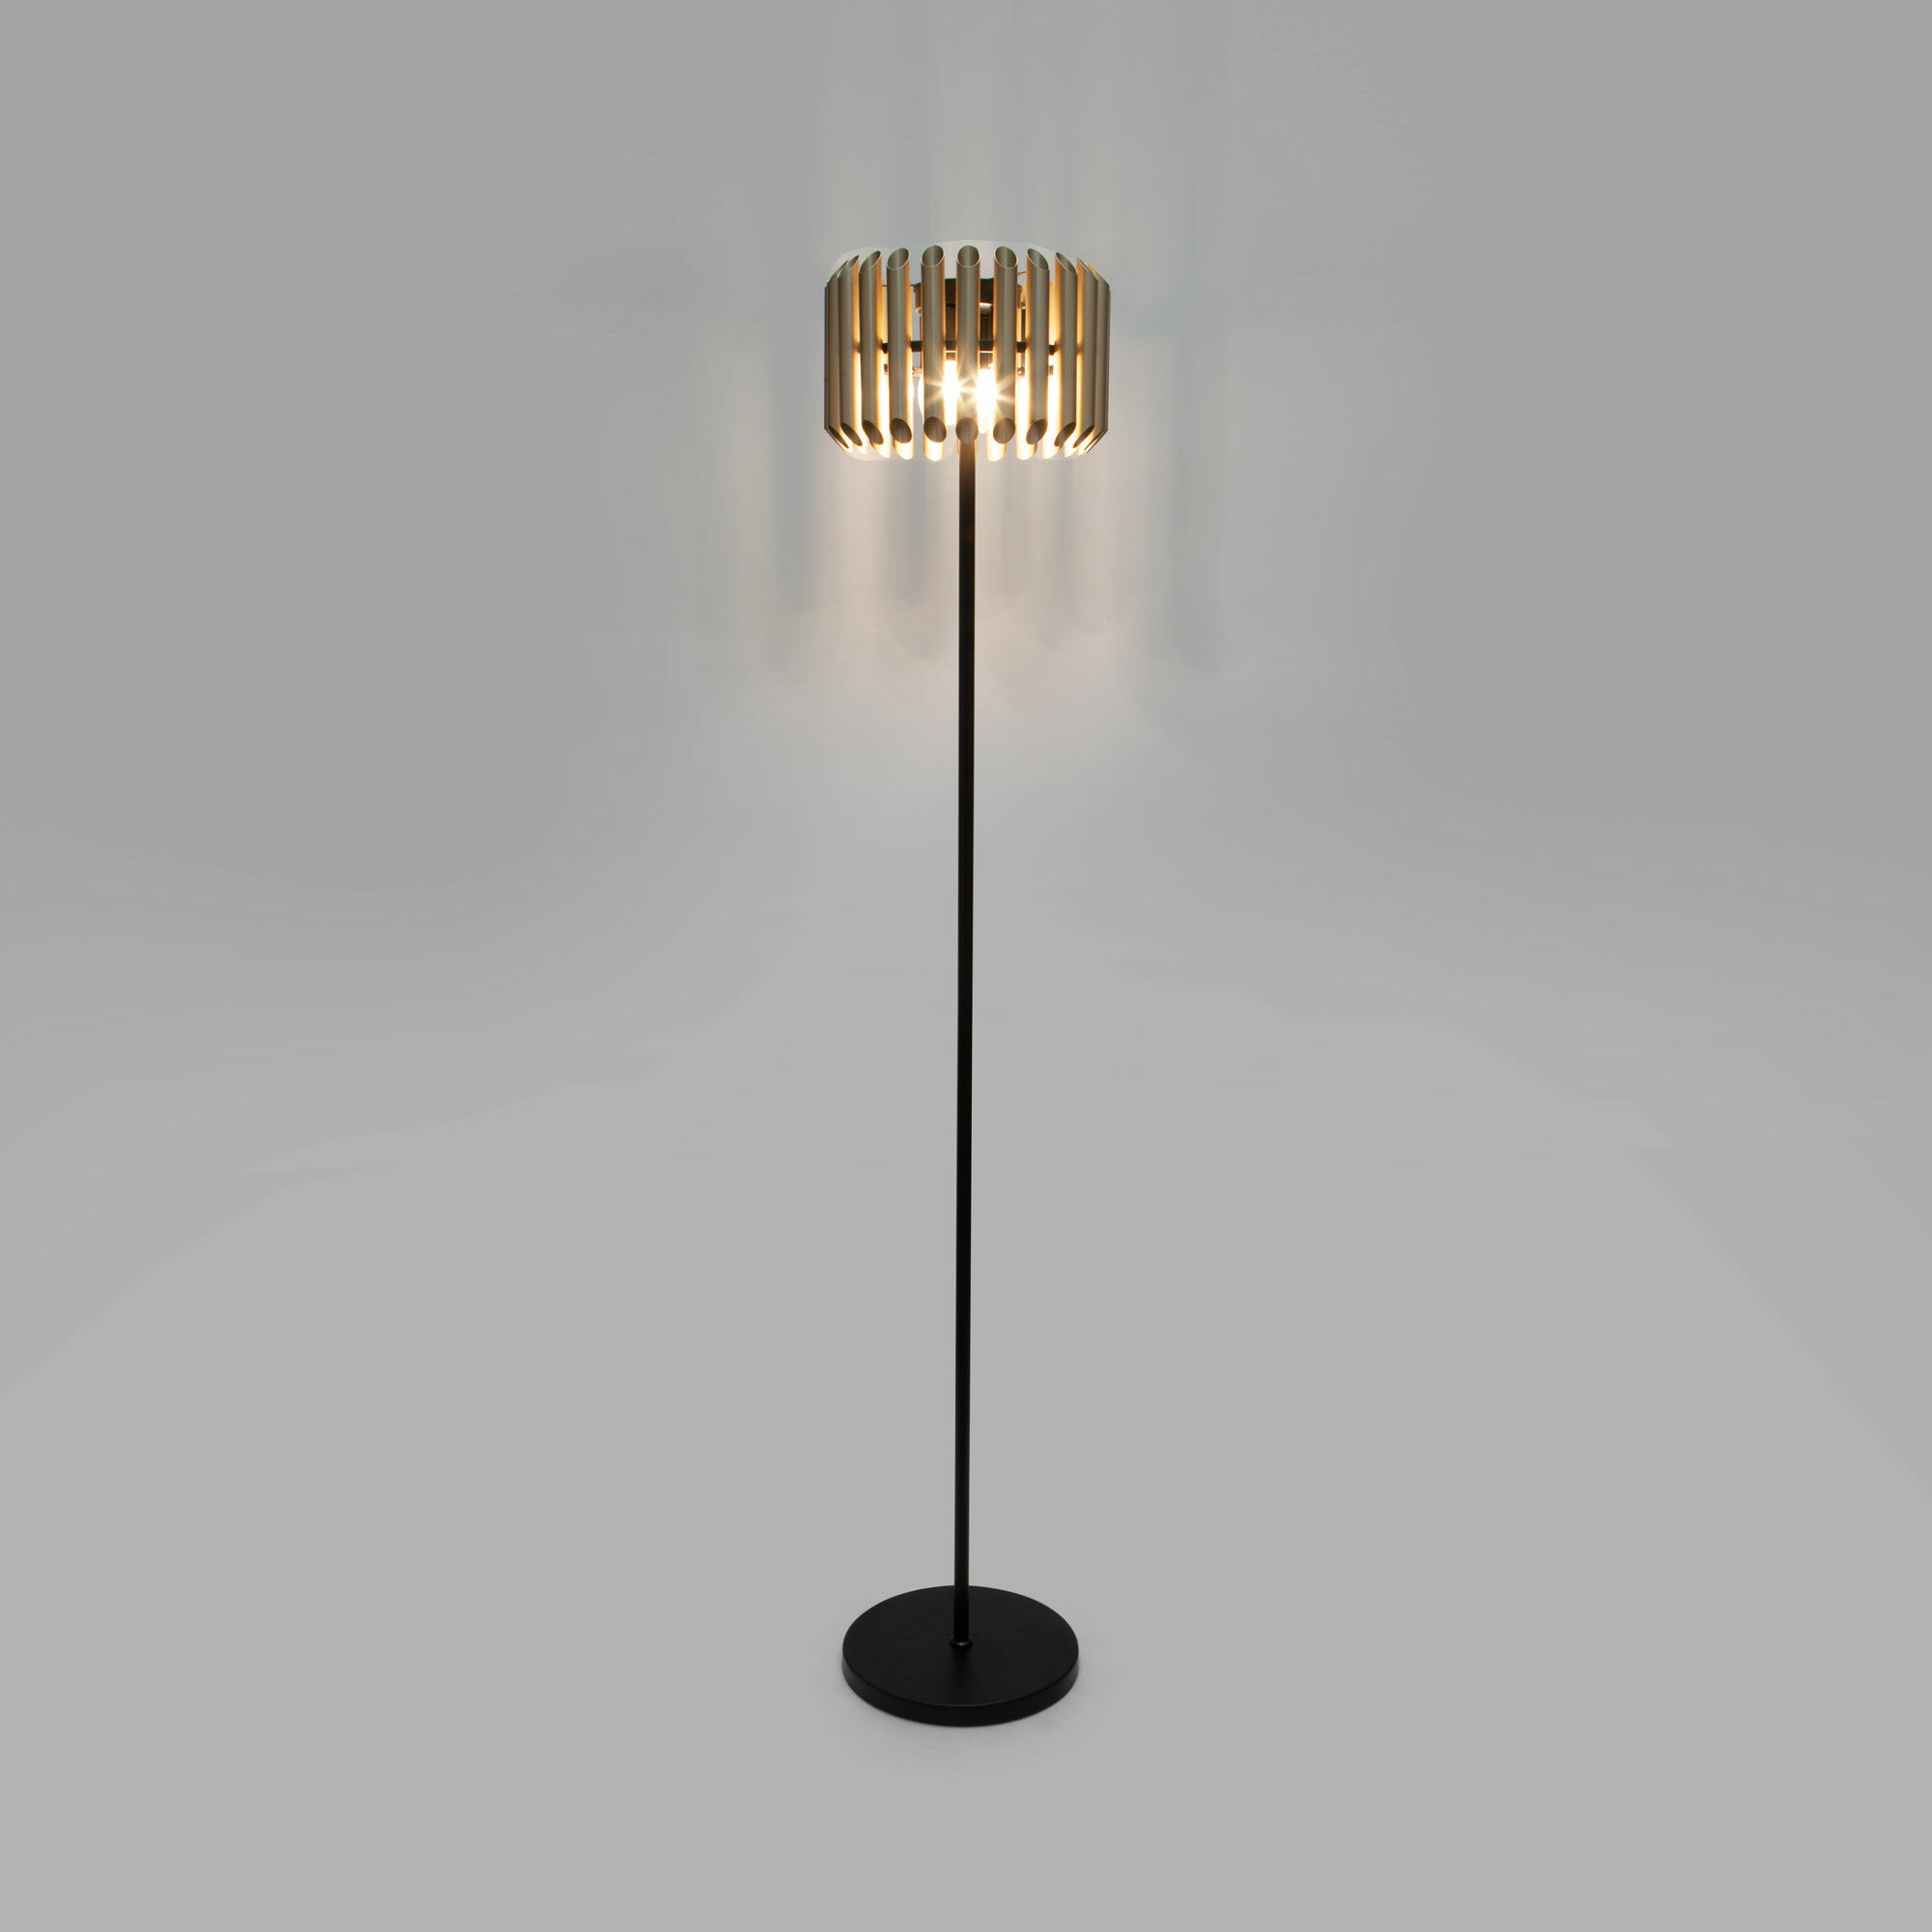 Напольный светильник с металлическим плафоном Bogate's Castellie 01106/4 черный / шампань. Фото 5